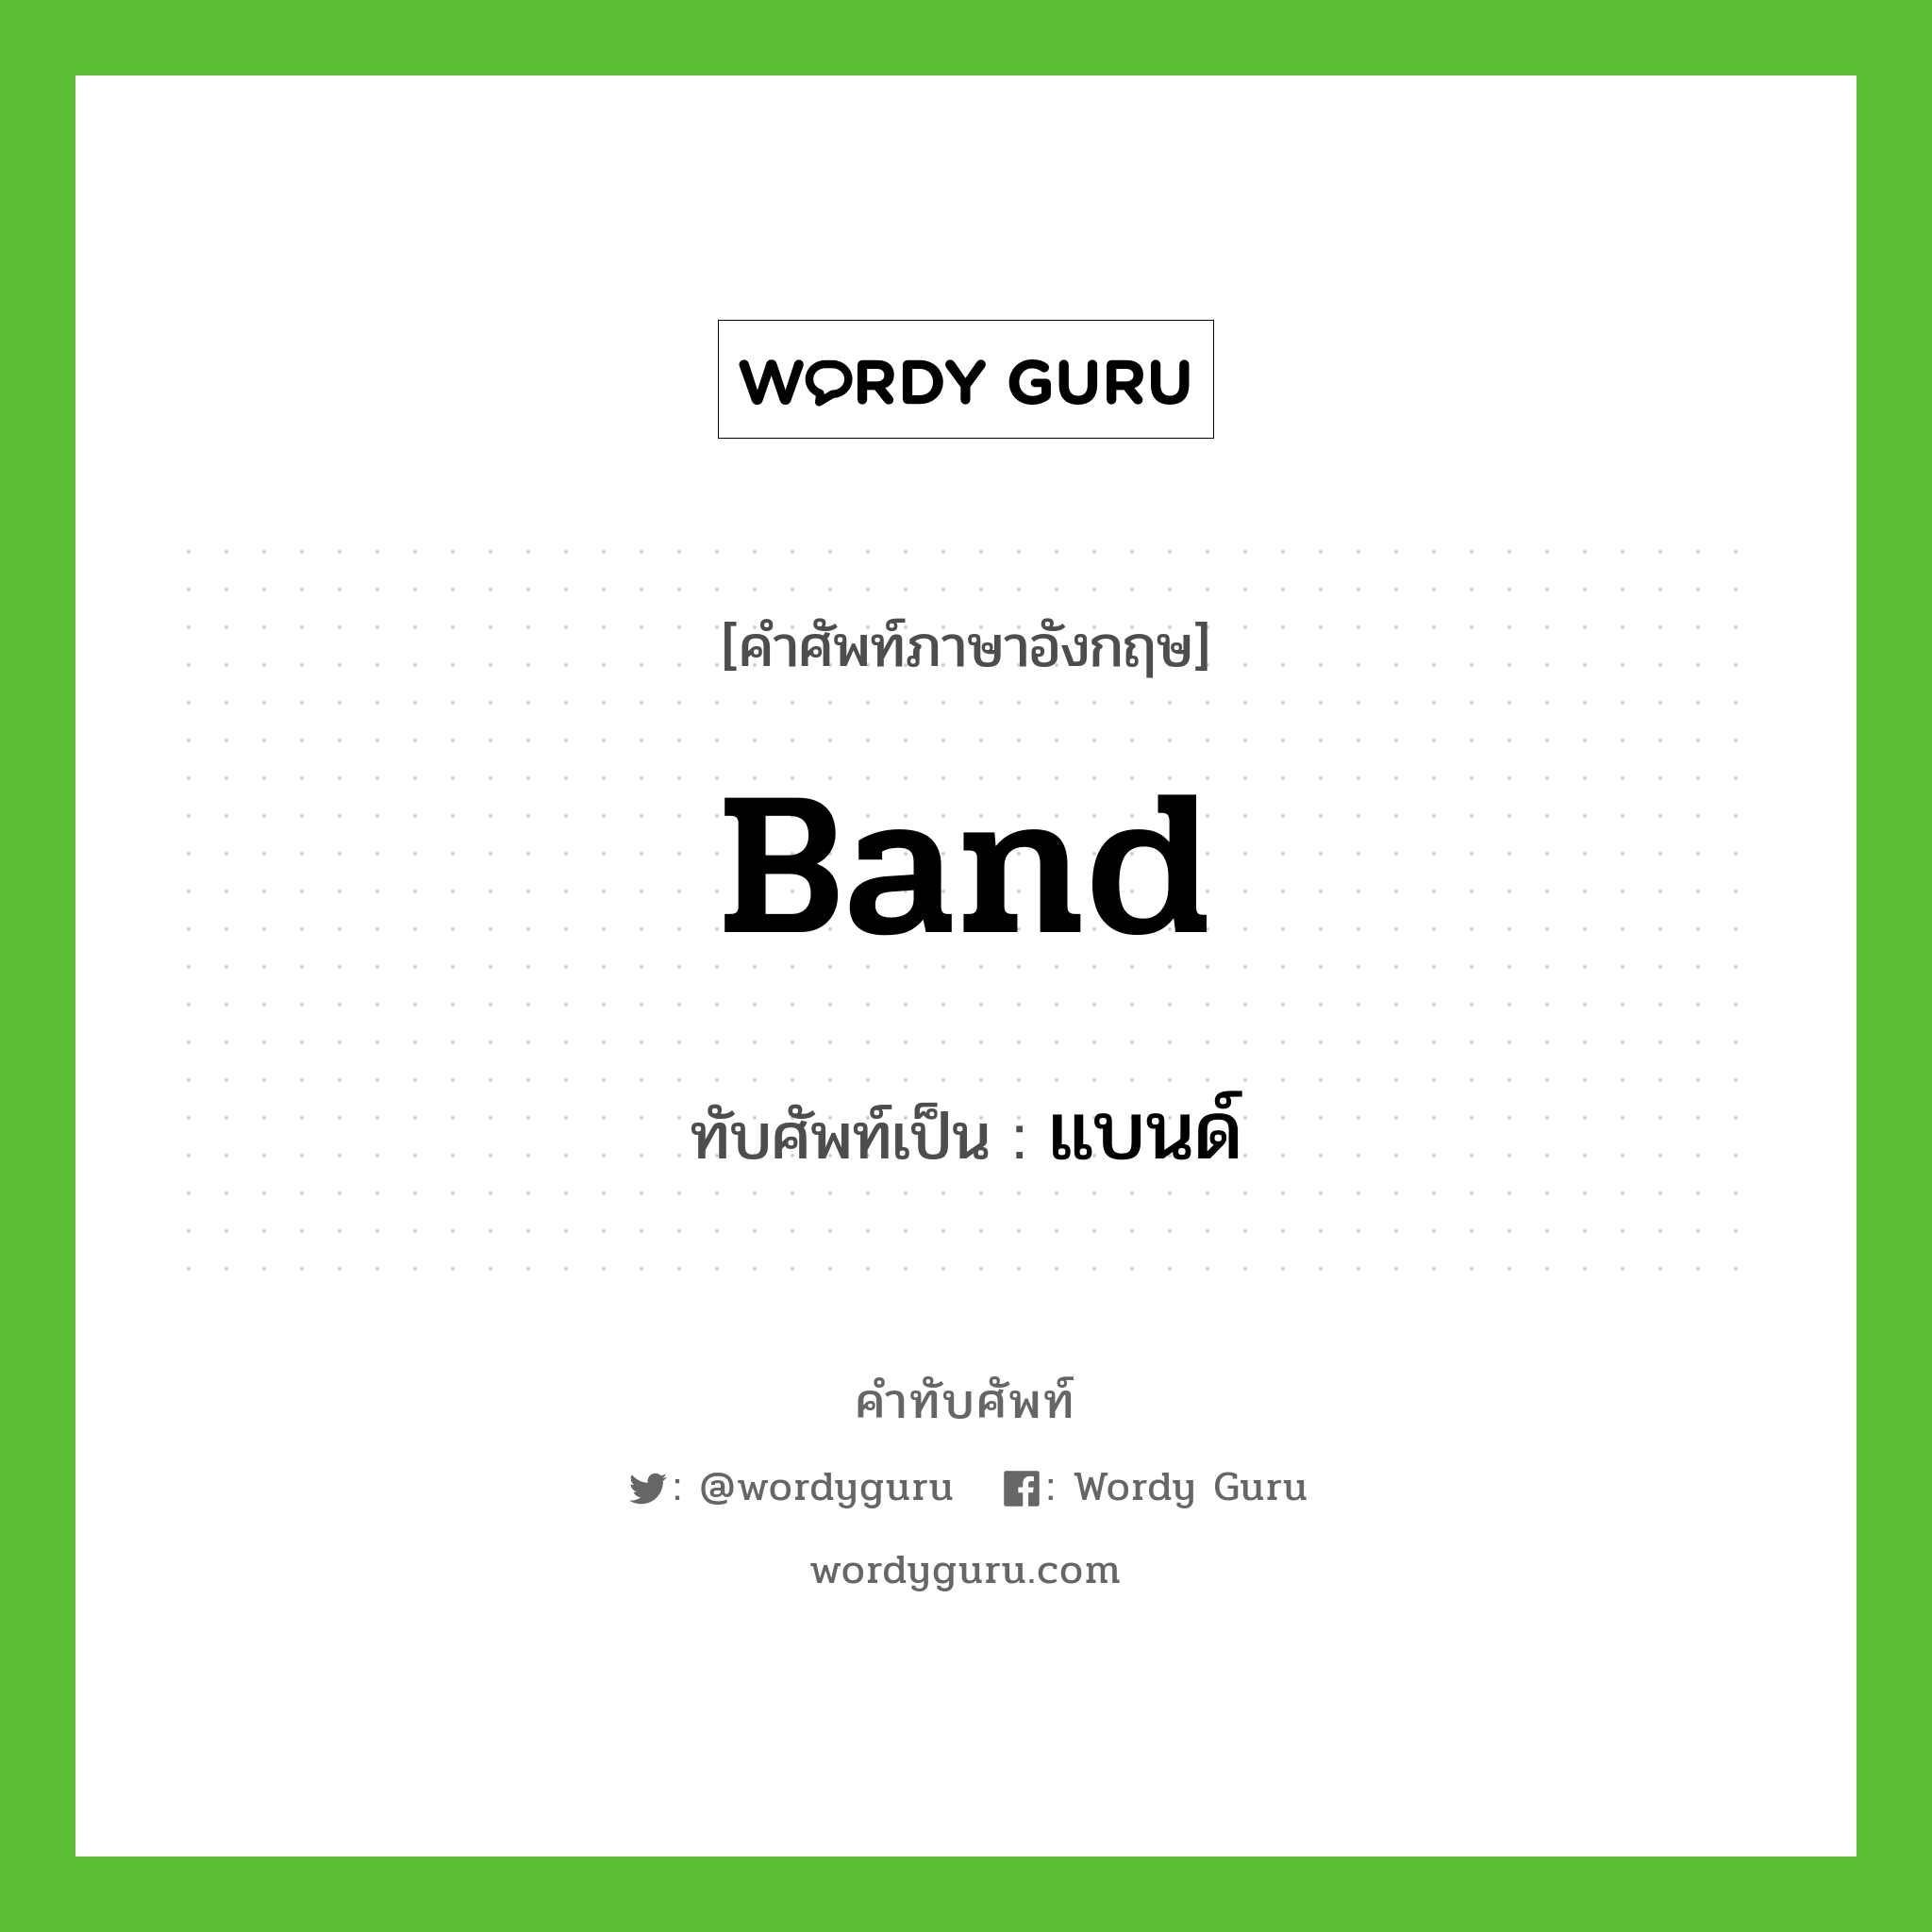 band เขียนเป็นคำไทยว่าอะไร?, คำศัพท์ภาษาอังกฤษ band ทับศัพท์เป็น แบนด์